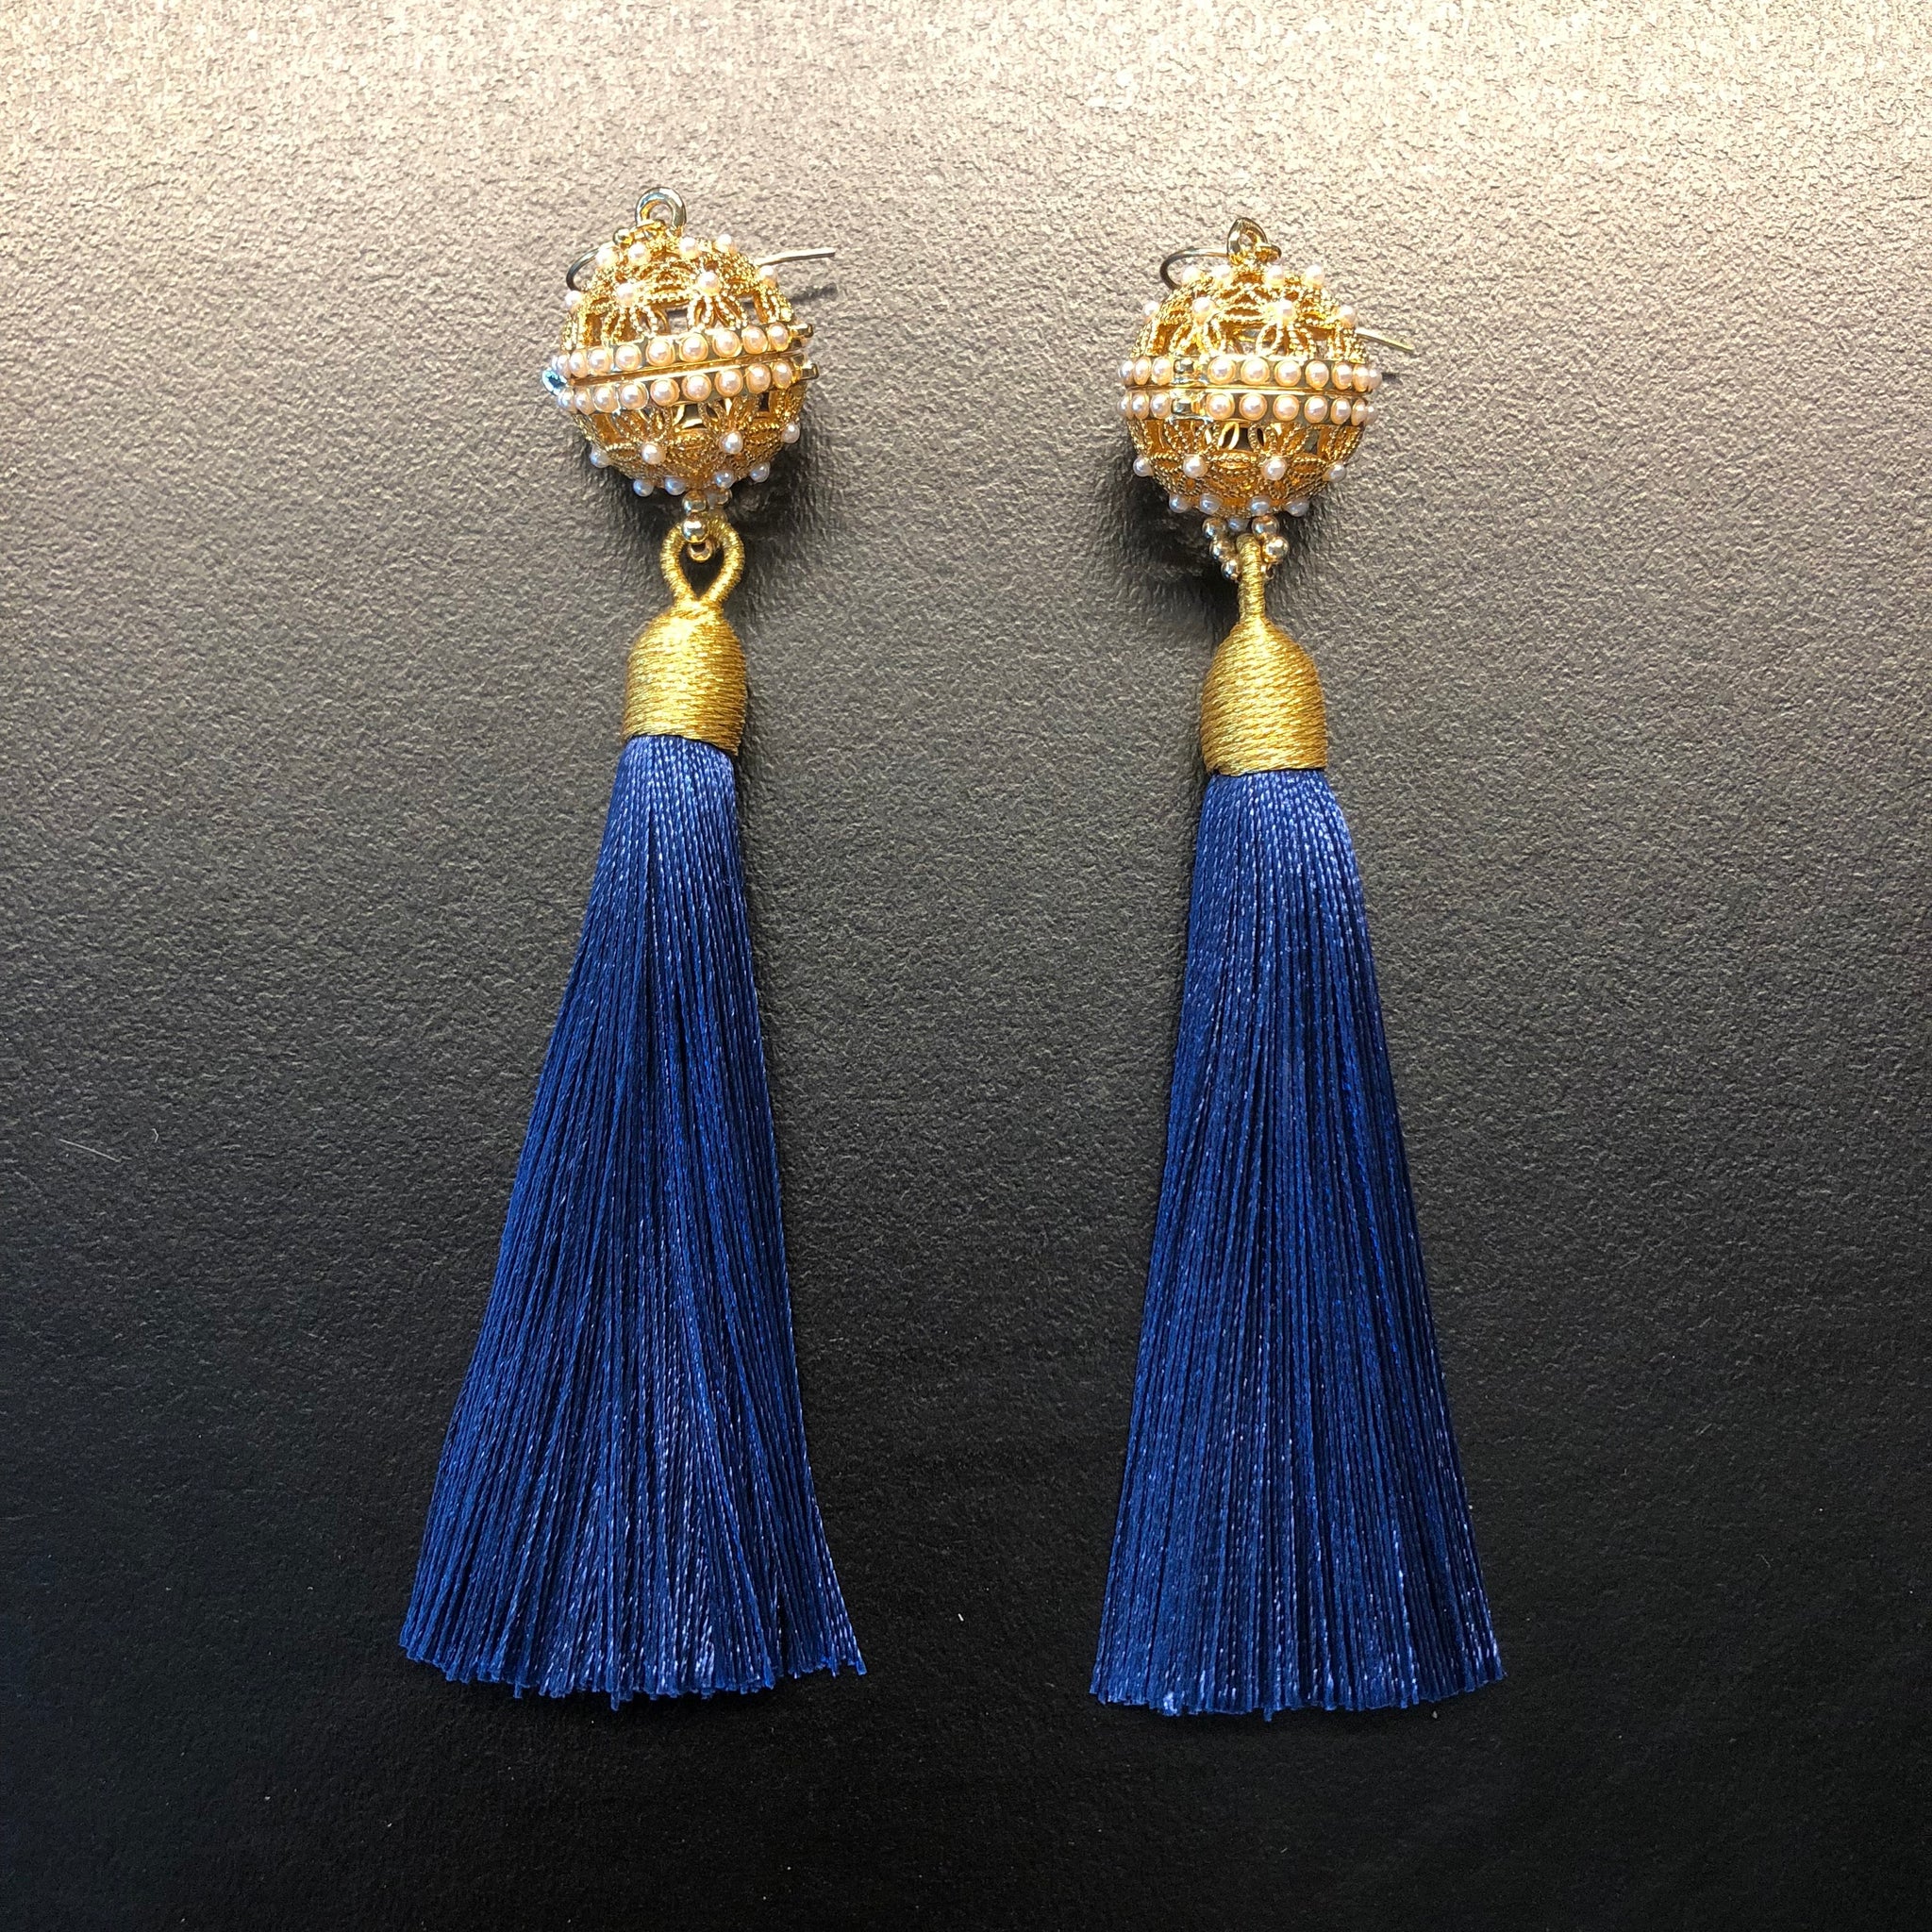 Discover 190+ navy blue tassel earrings